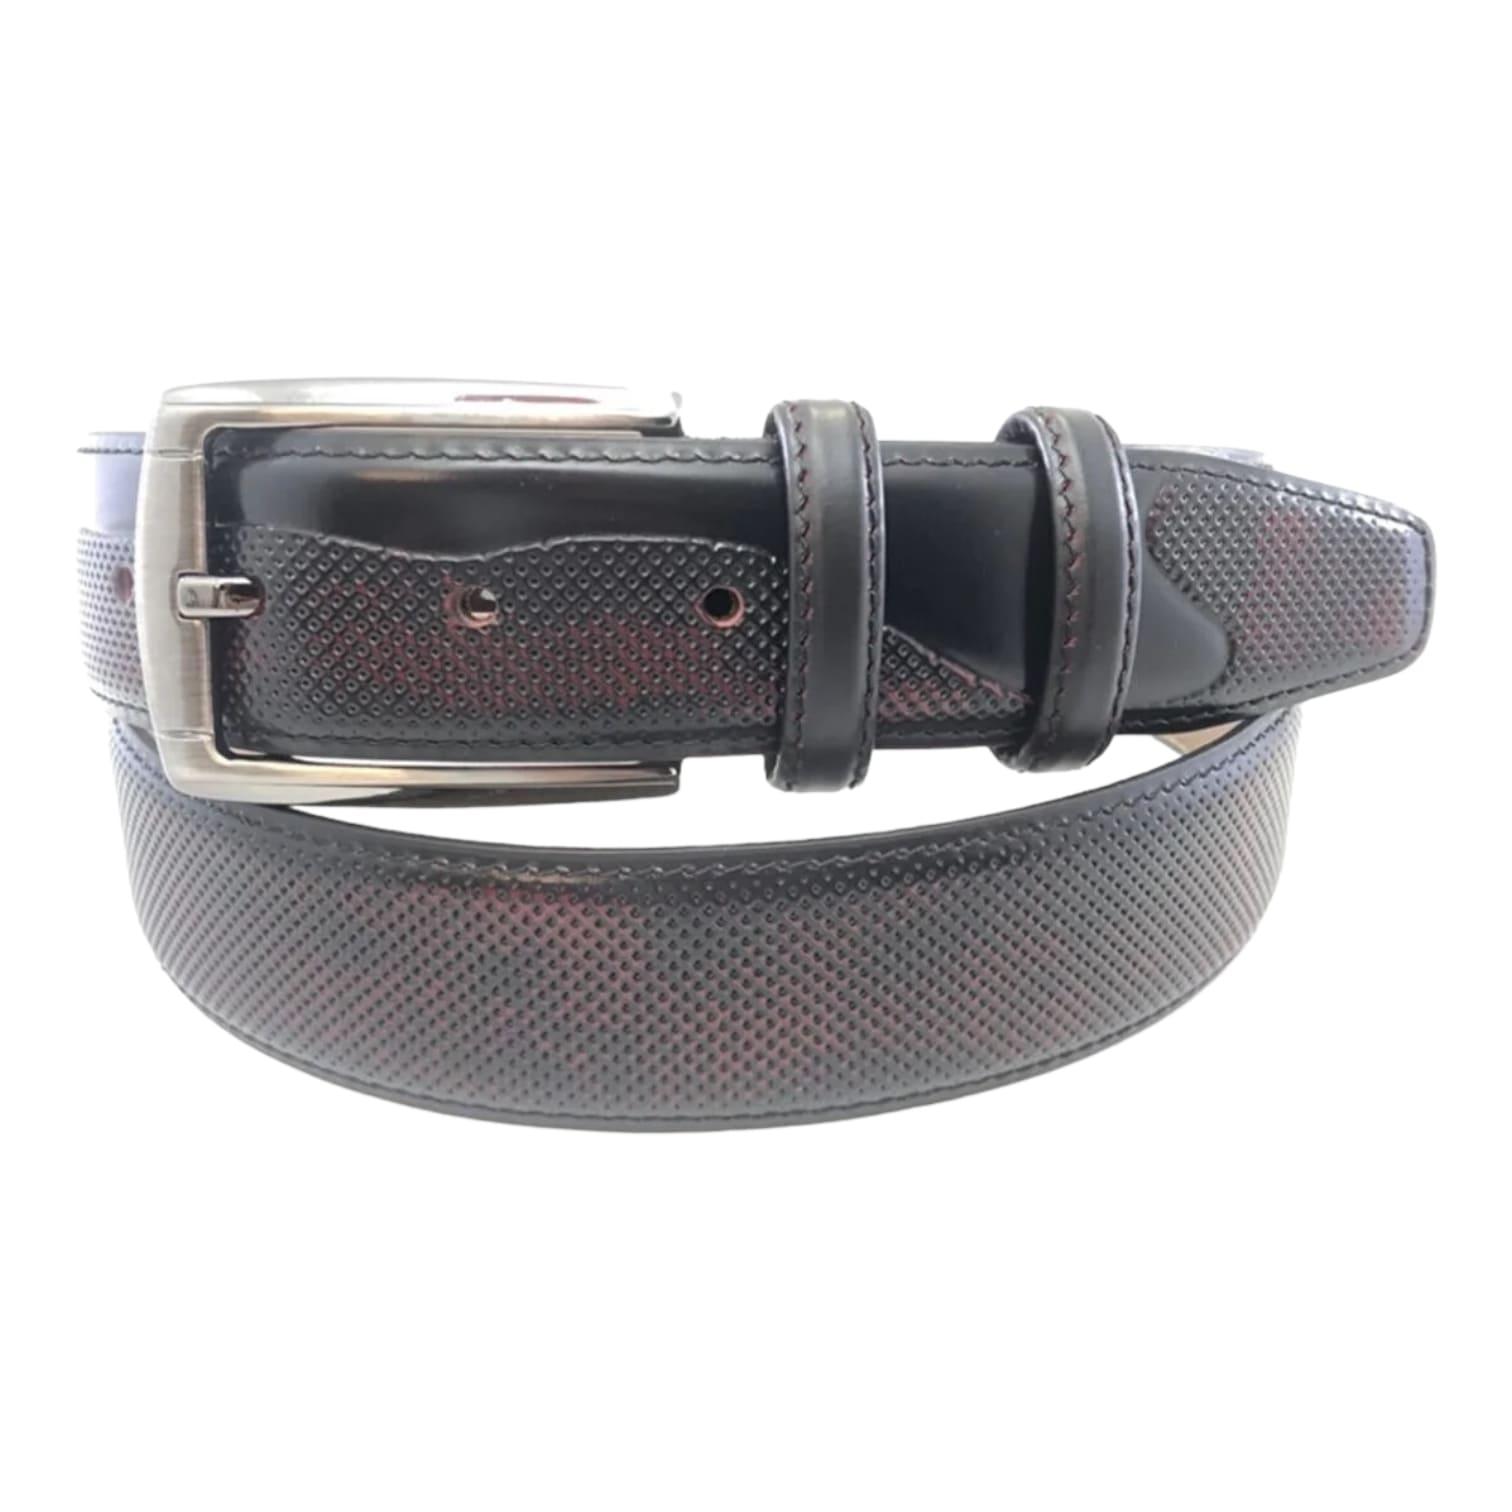 Buy Burgundy Black Perforated Leather Belt For Men - LeatherBeltsOnline.com